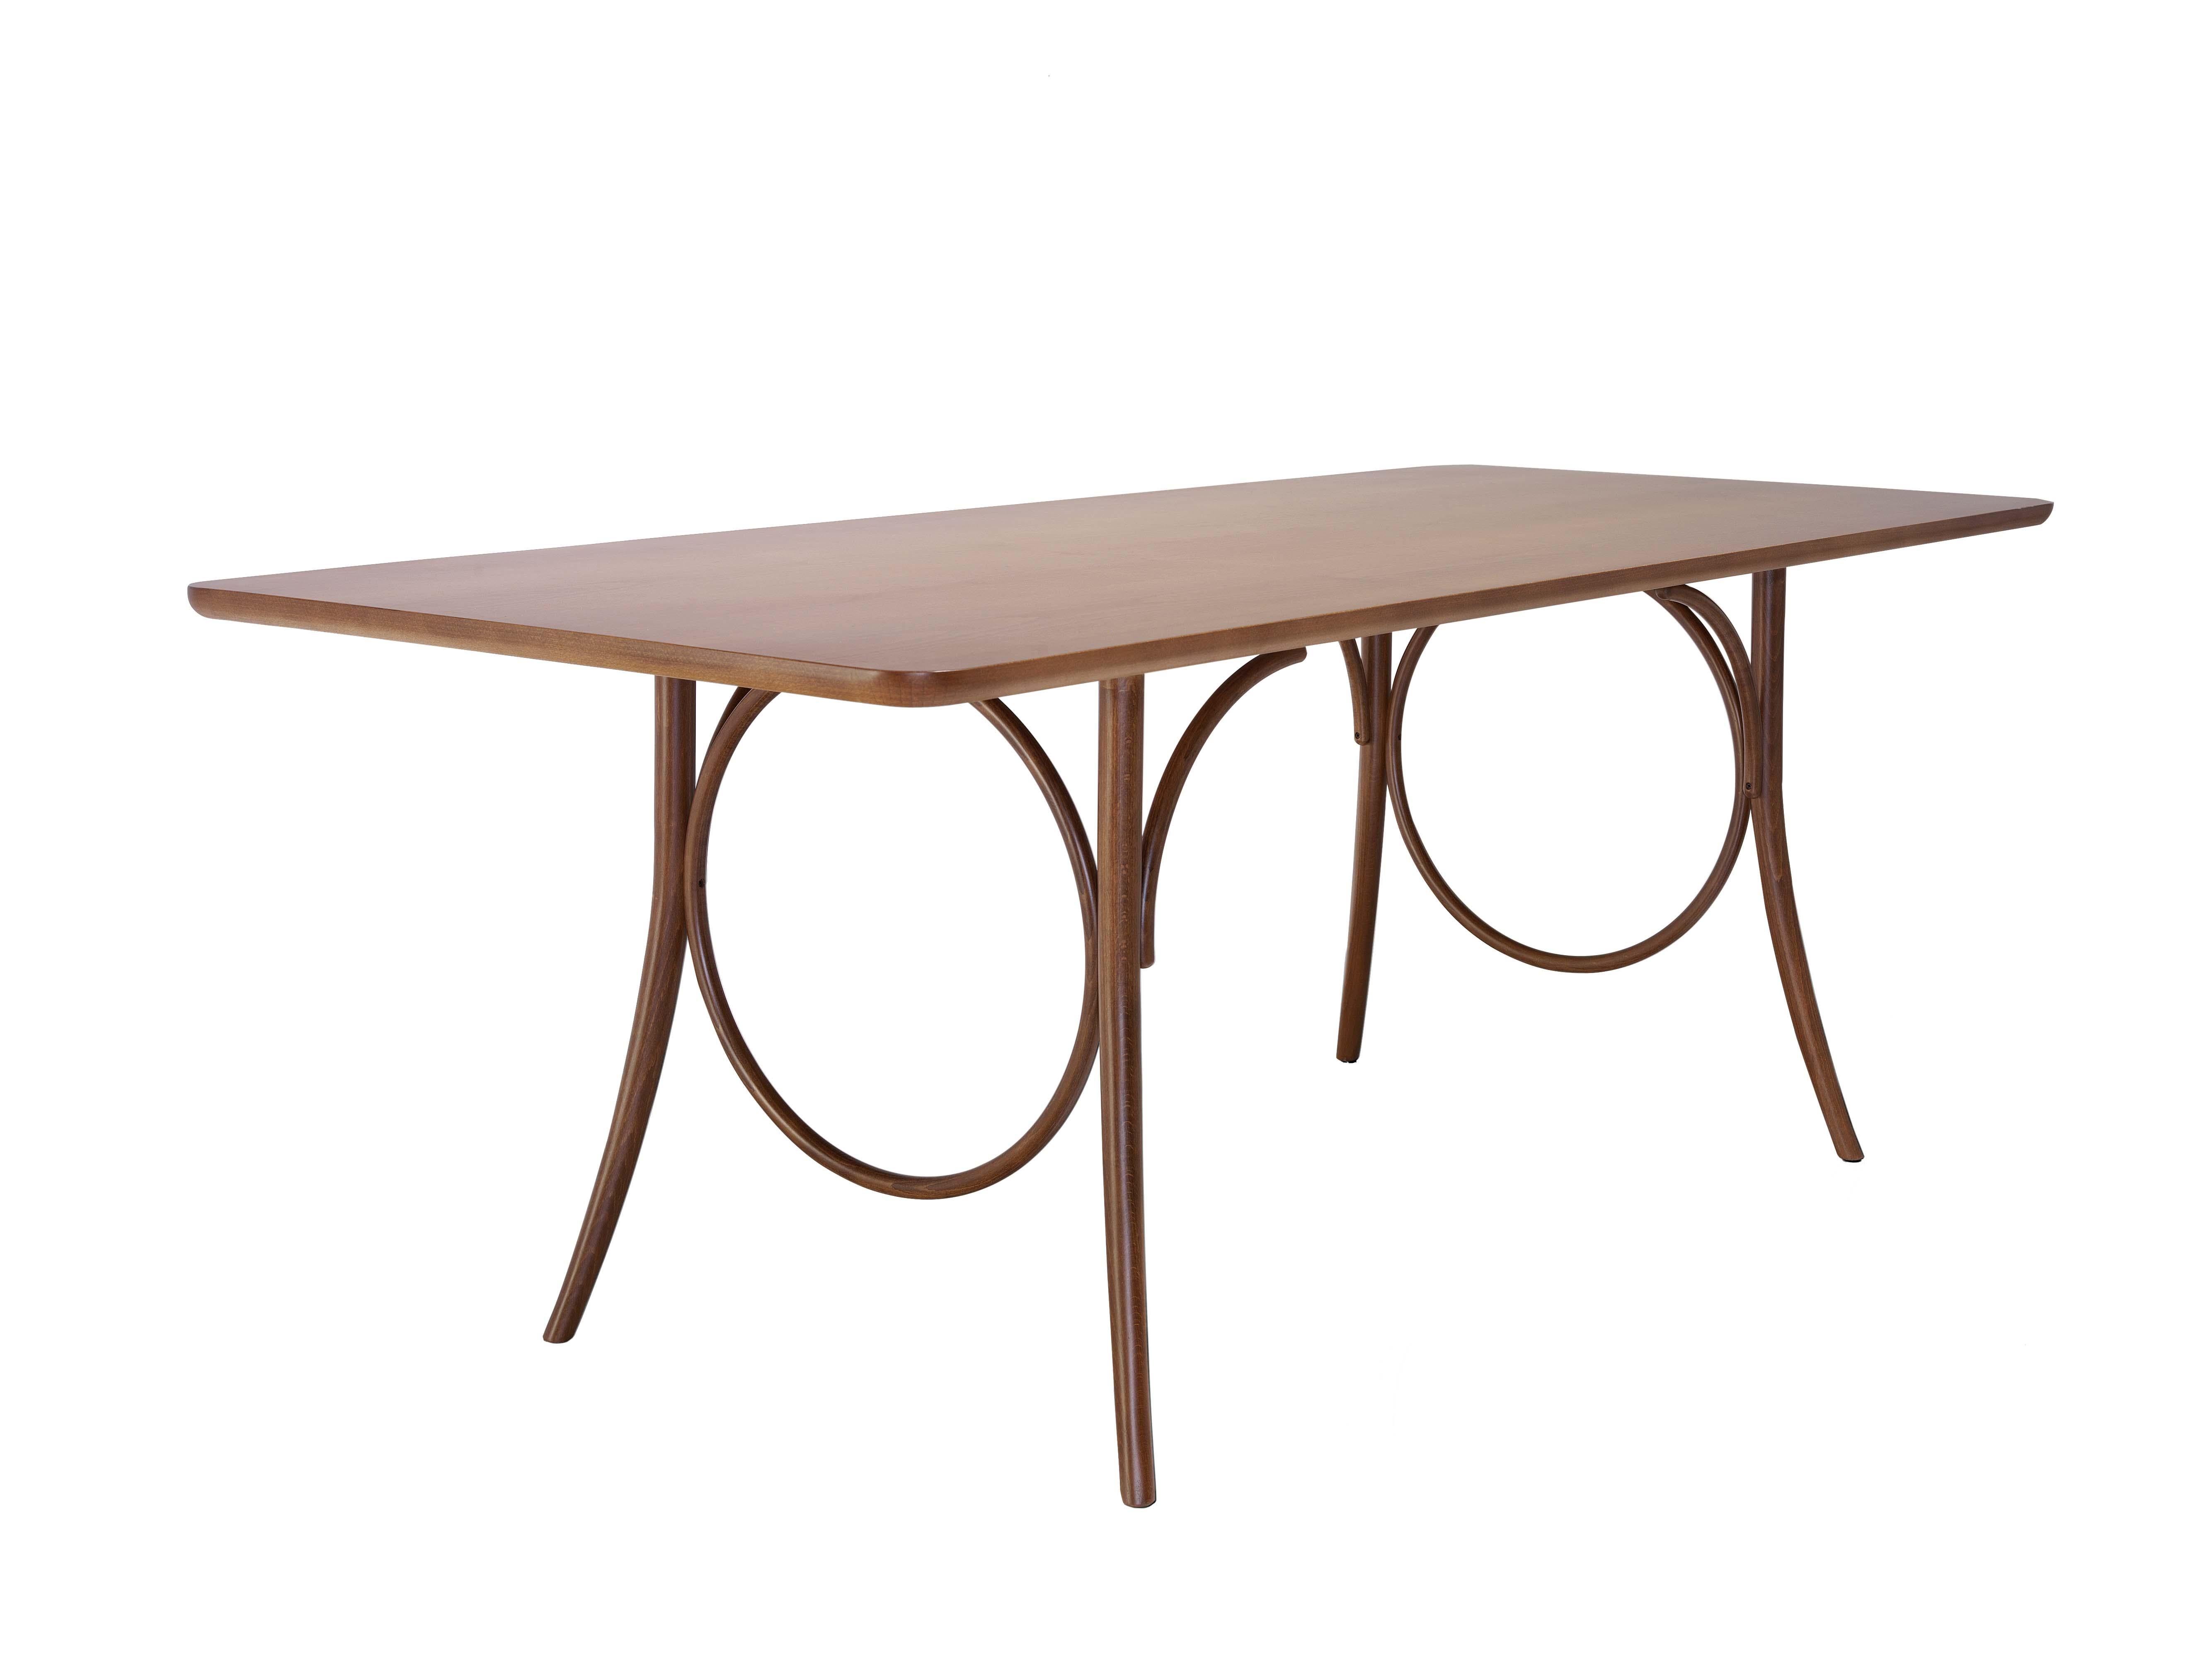 Wiener GTV Design bereichert ihr Einrichtungsvorschlag für das Esszimmer mit dem großen Tisch Ring Esstisch, der sich durch eine leichte und elegante Struktur auszeichnet, die stilistischen Merkmale der Marke mit einer neuen Überschwänglichkeit